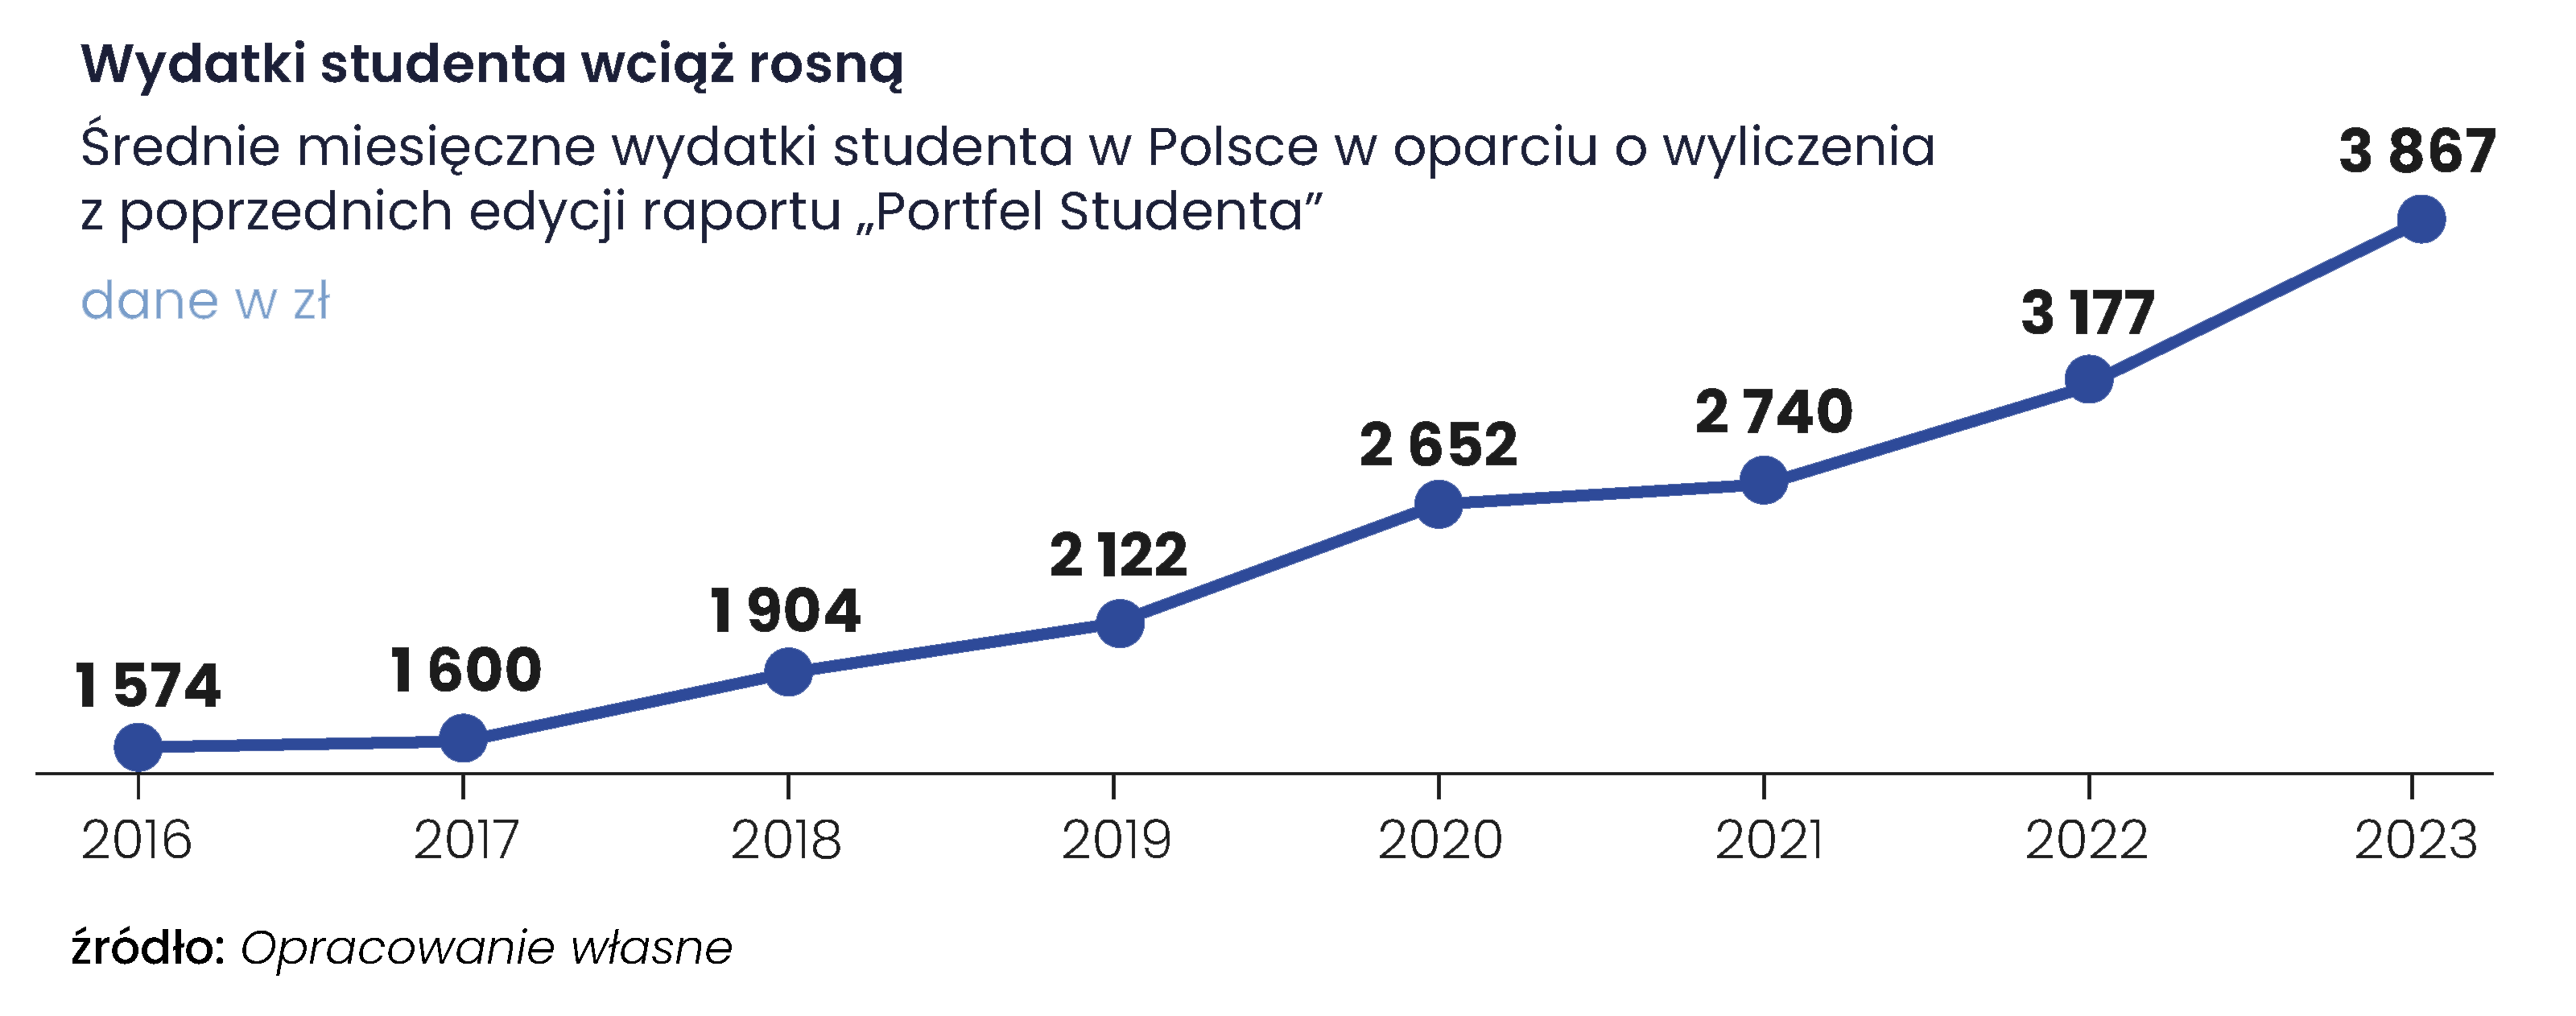 Wydatki studenta wciąż rosną - Raport „Portfel Studenta 2023” - Związek Banków Polskich oraz Warszawski Instytut Bankowości